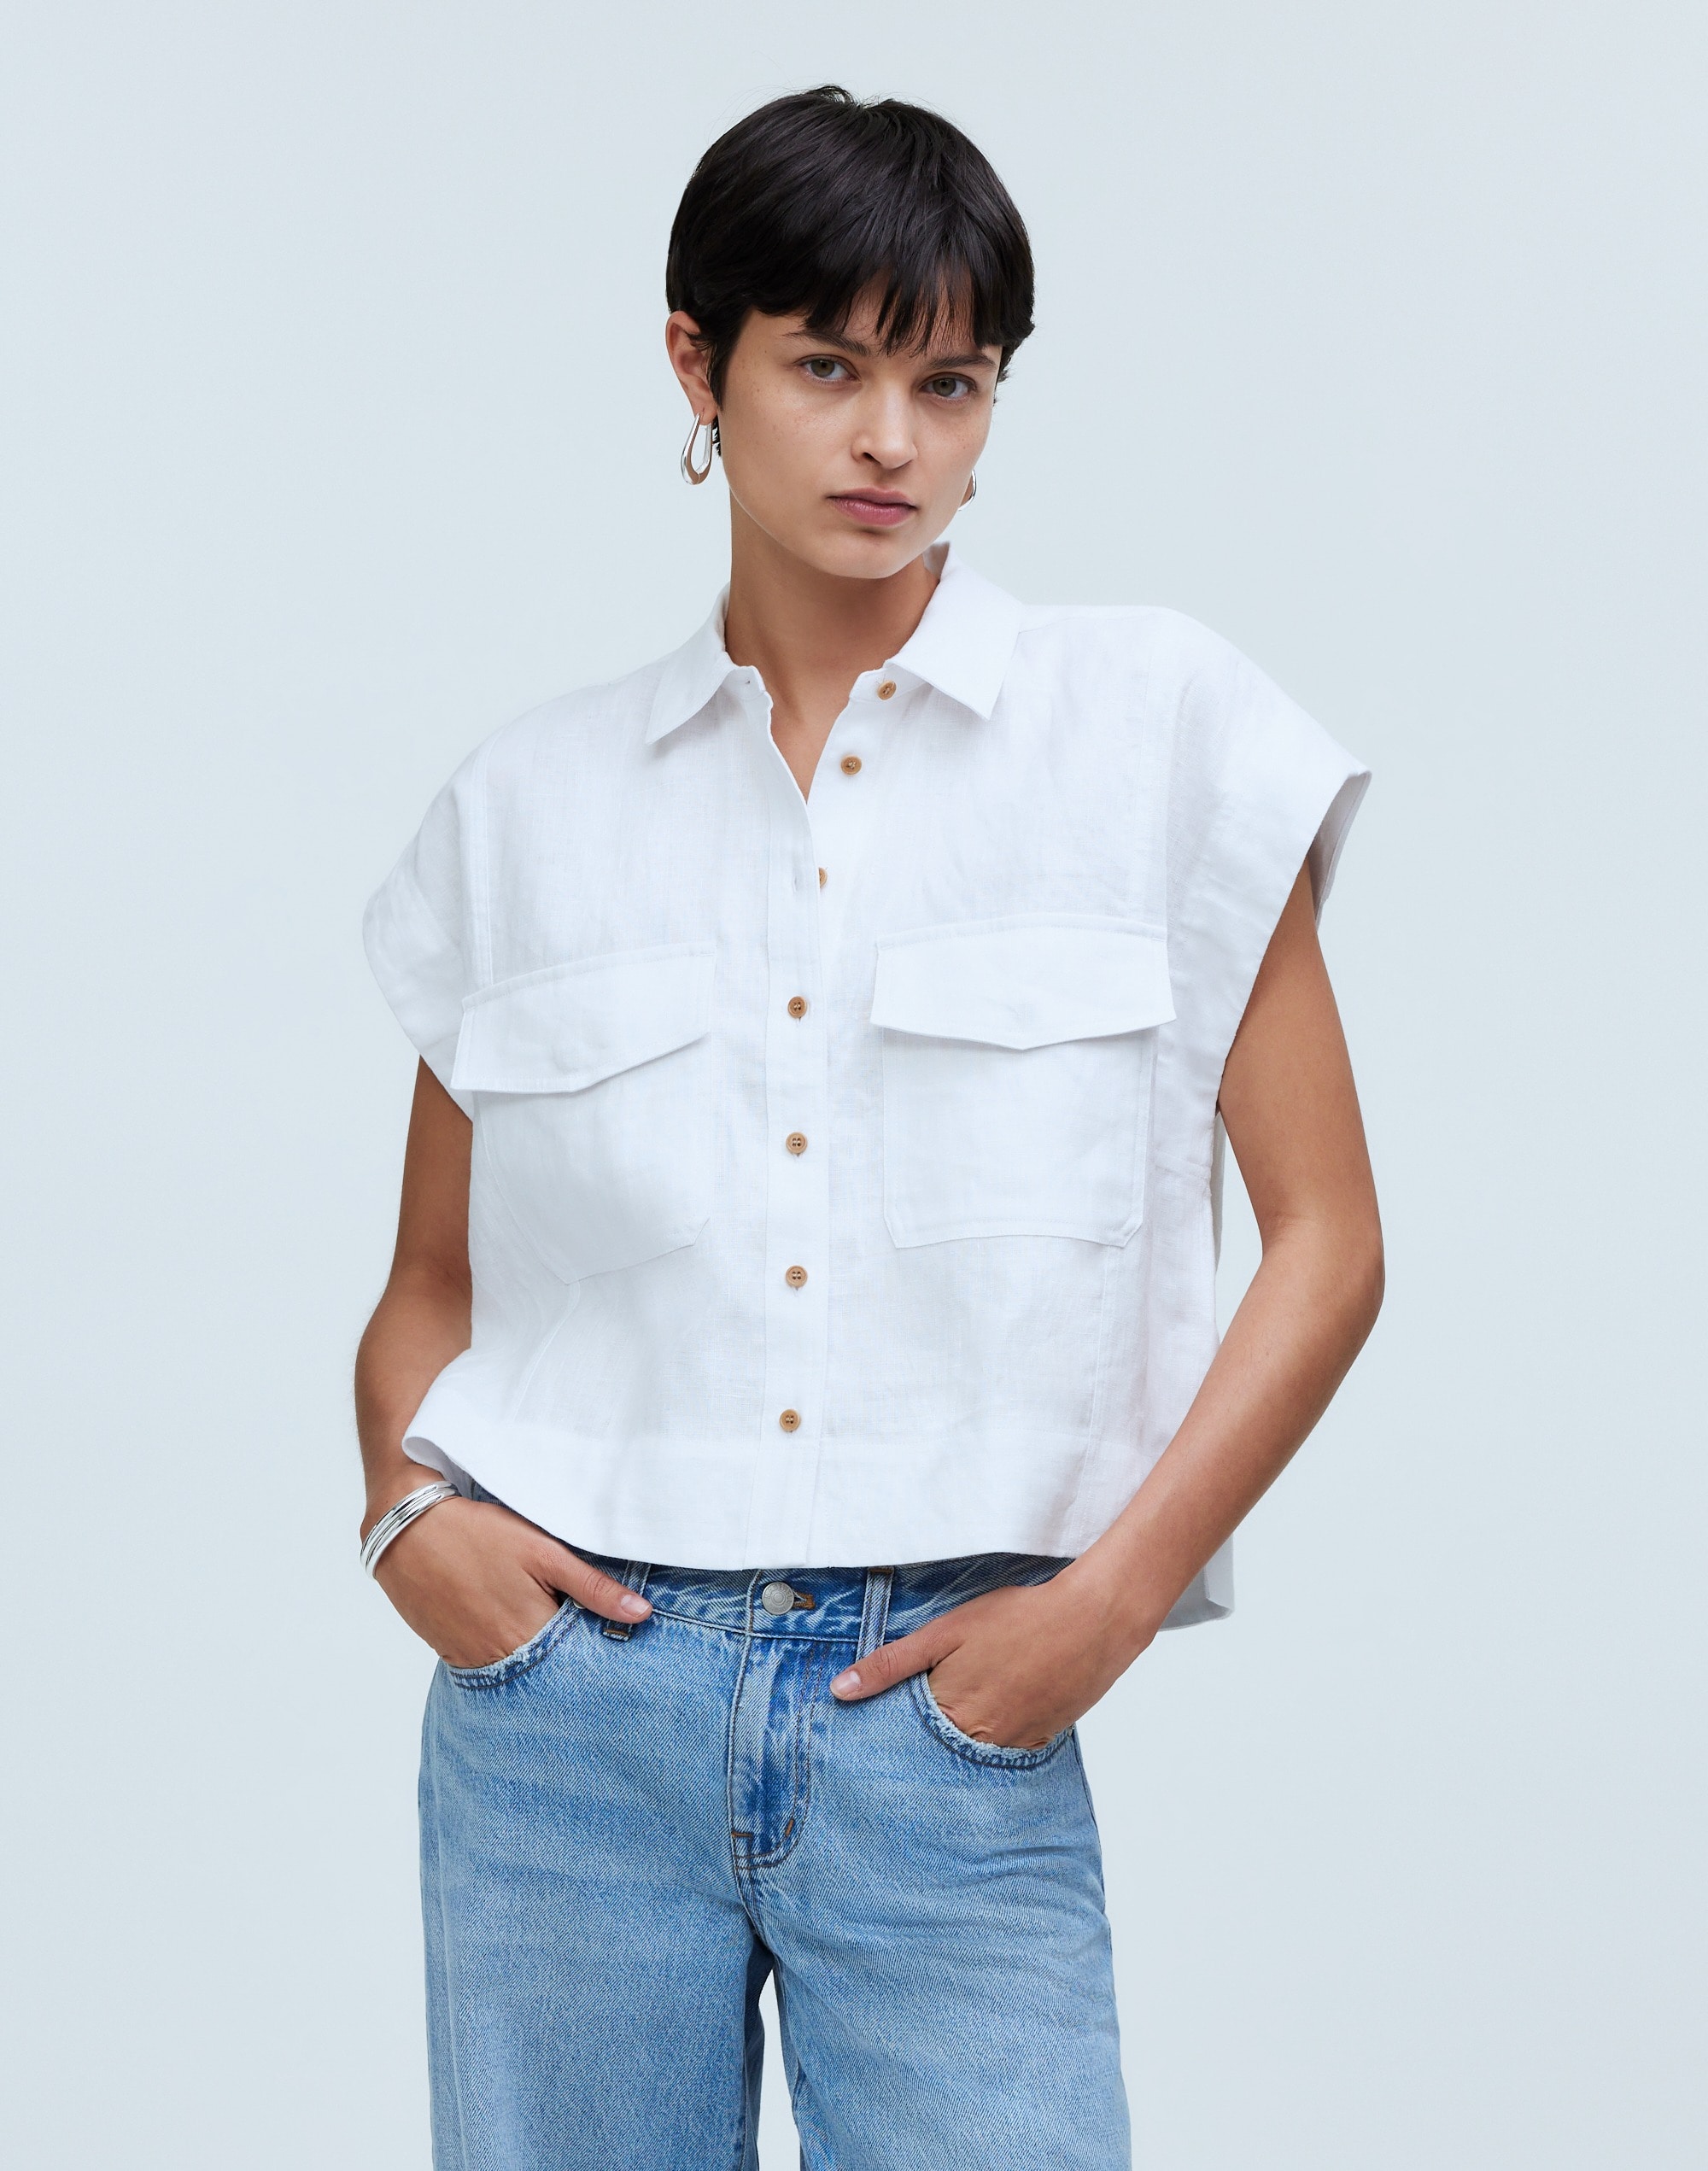 Flap-Pocket Button-Up Shirt in 100% Linen | Madewell